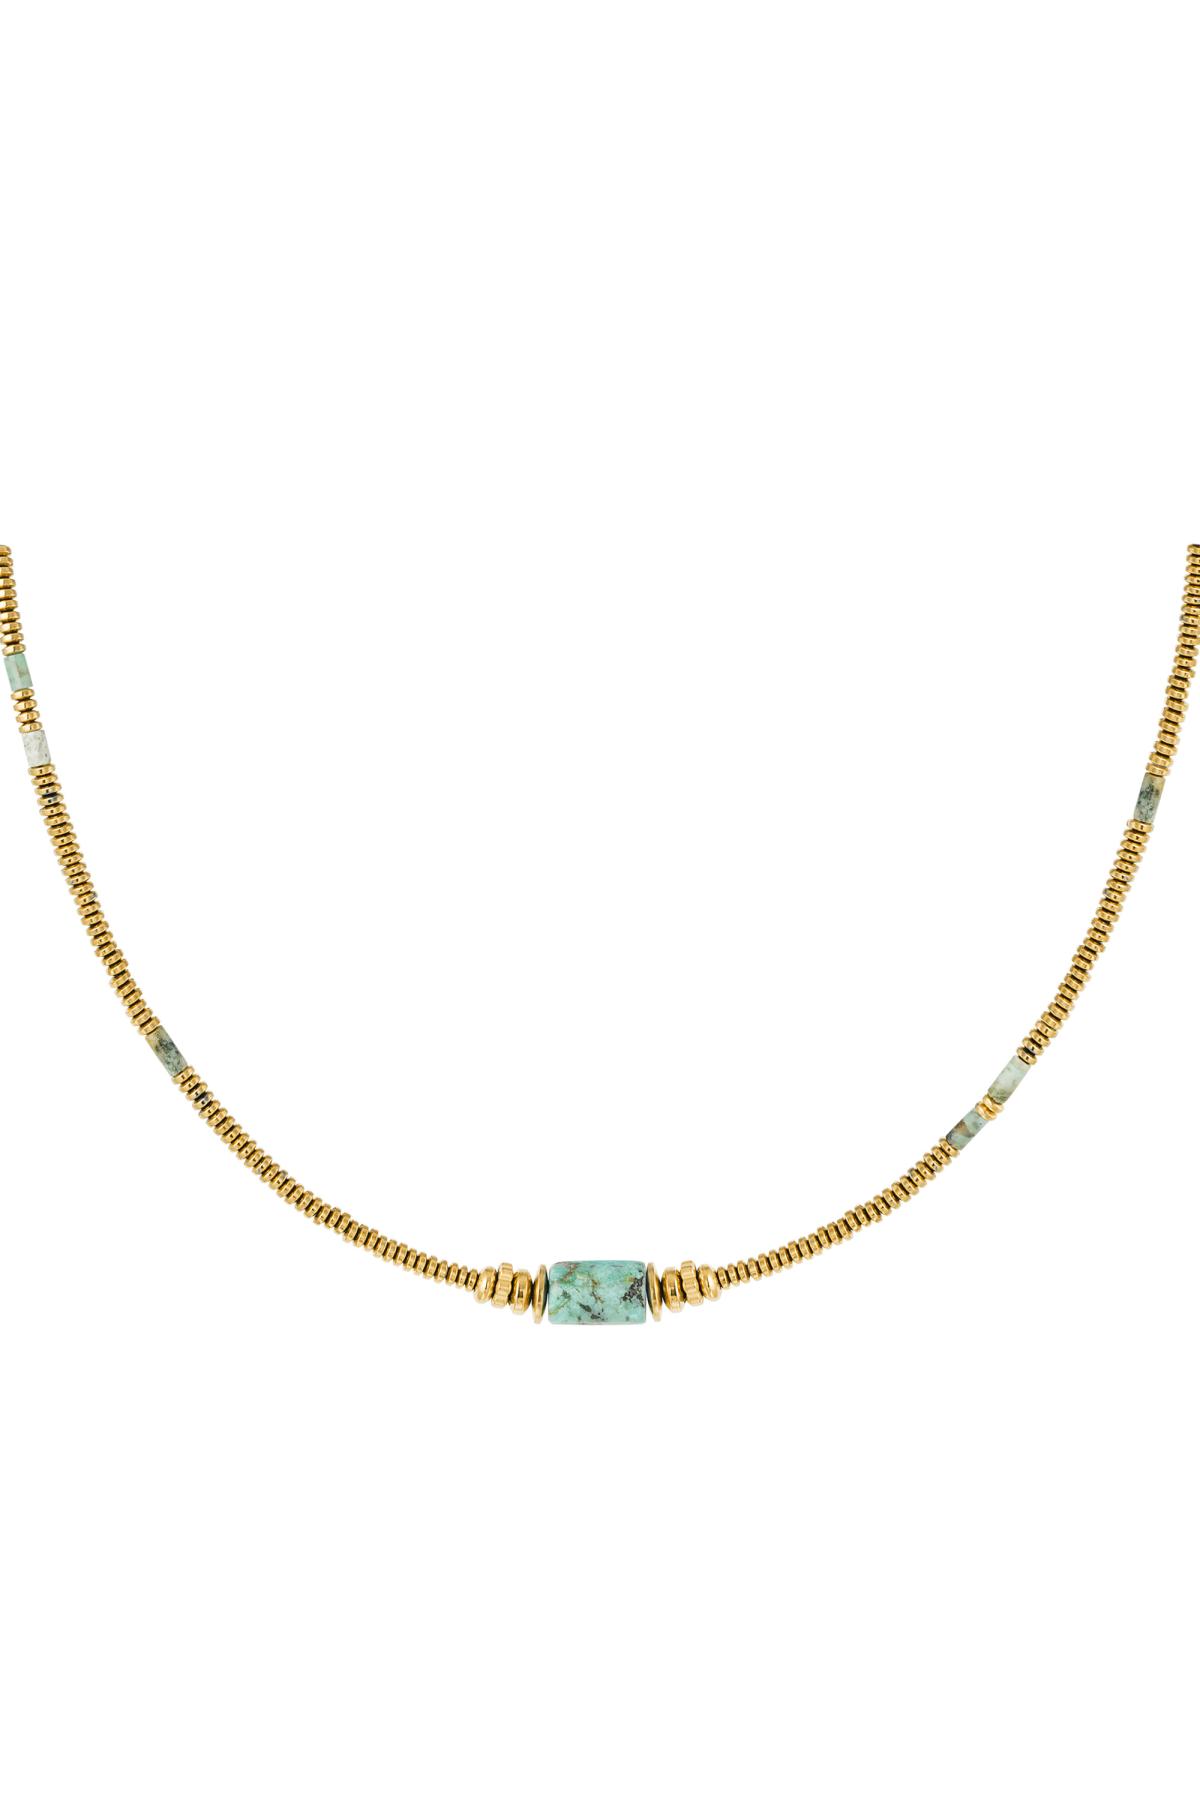 Collier perles fines avec breloque - Collection Pierres Naturelles Vert & Or Acier inoxydable h5 